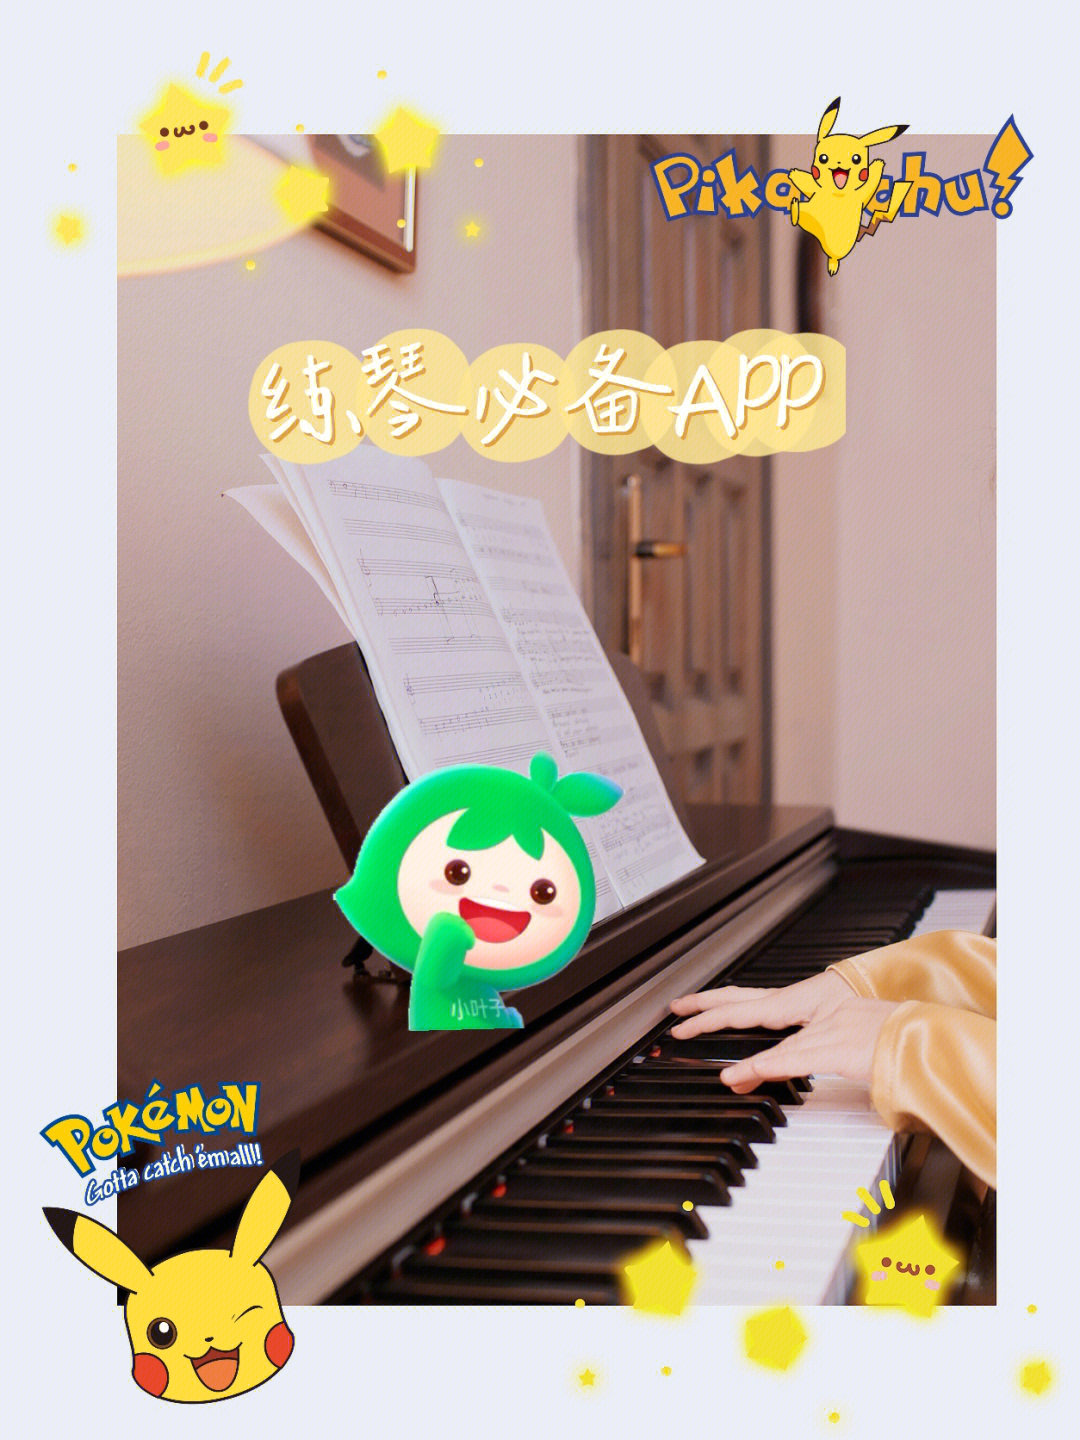 间觉得当初给妞妞选择小叶子钢琴app简直太明智了起初是因为不懂乐理